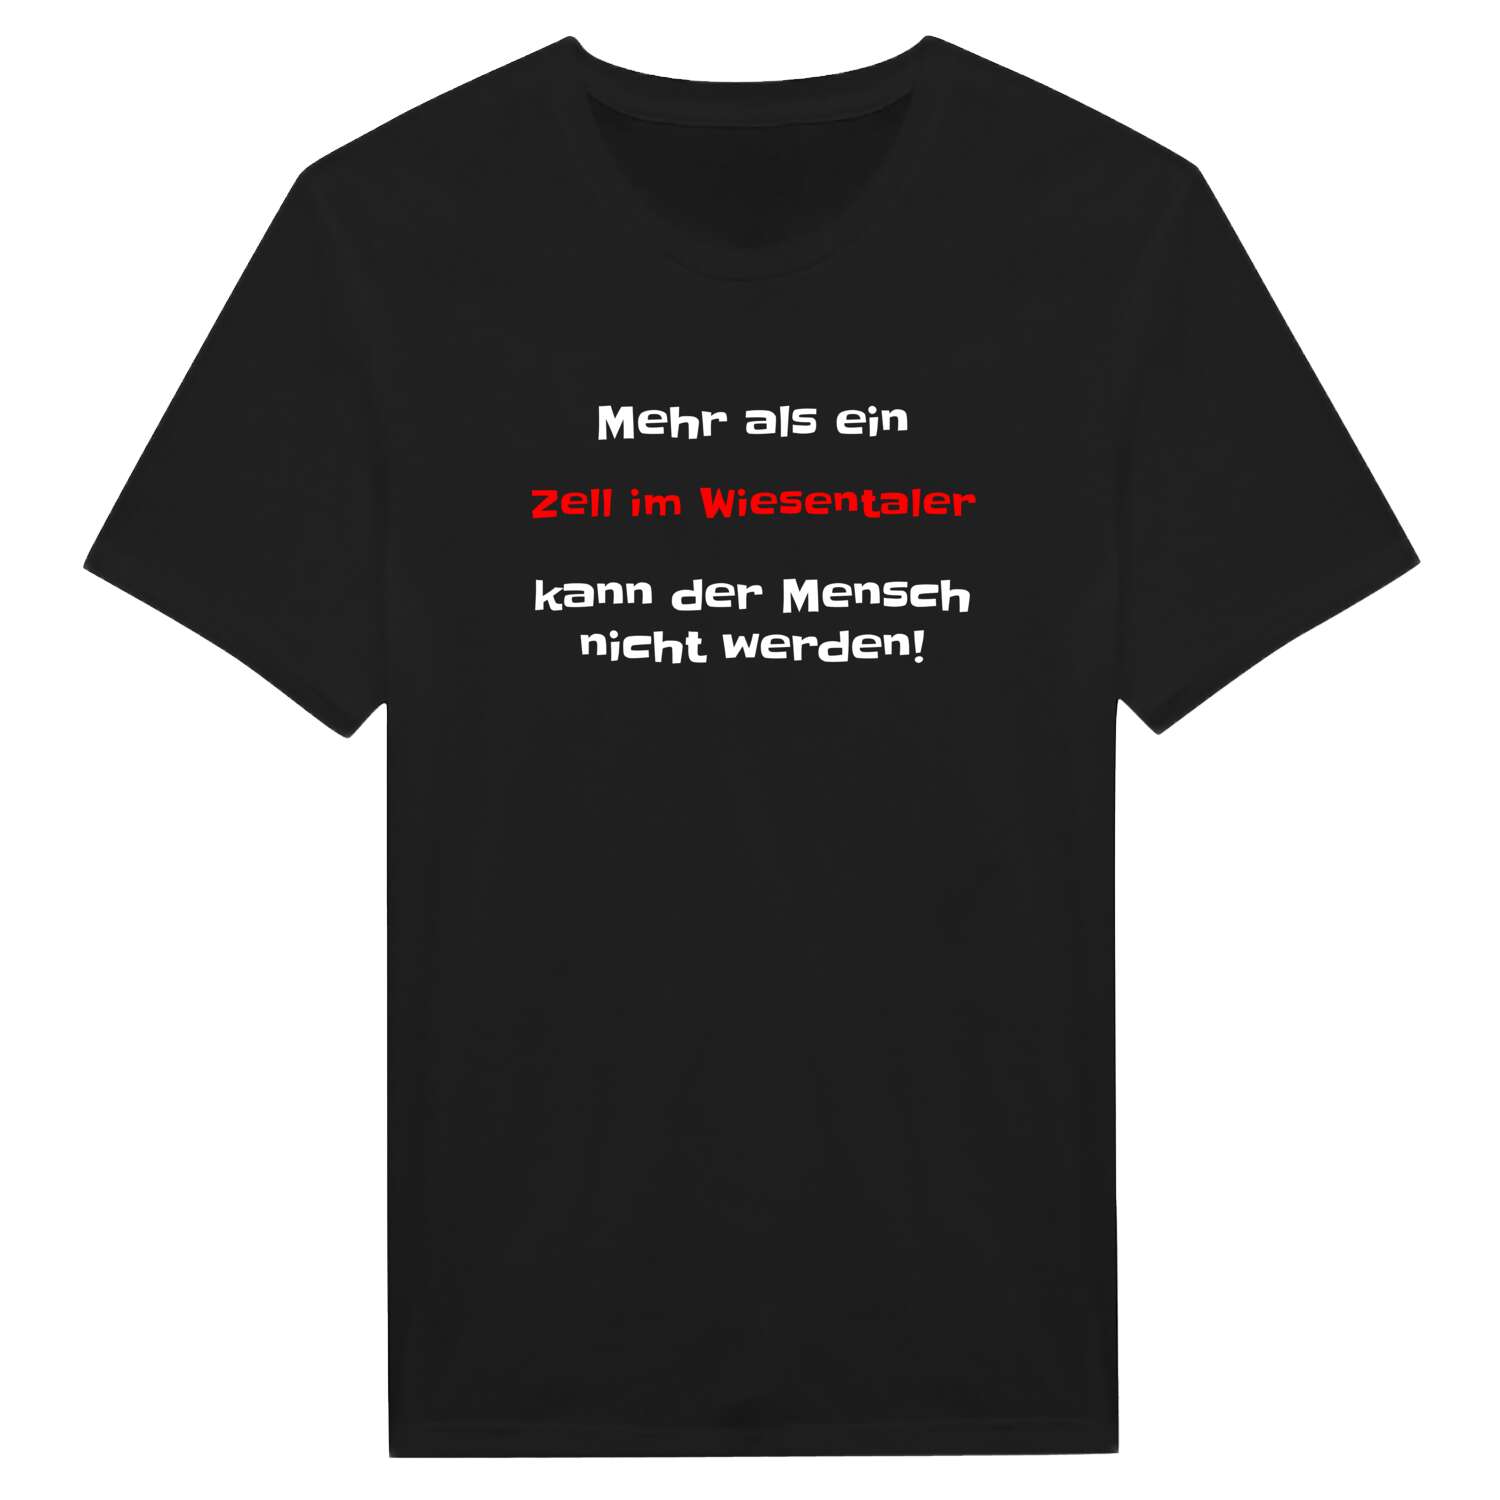 Zell im Wiesental T-Shirt »Mehr als ein«